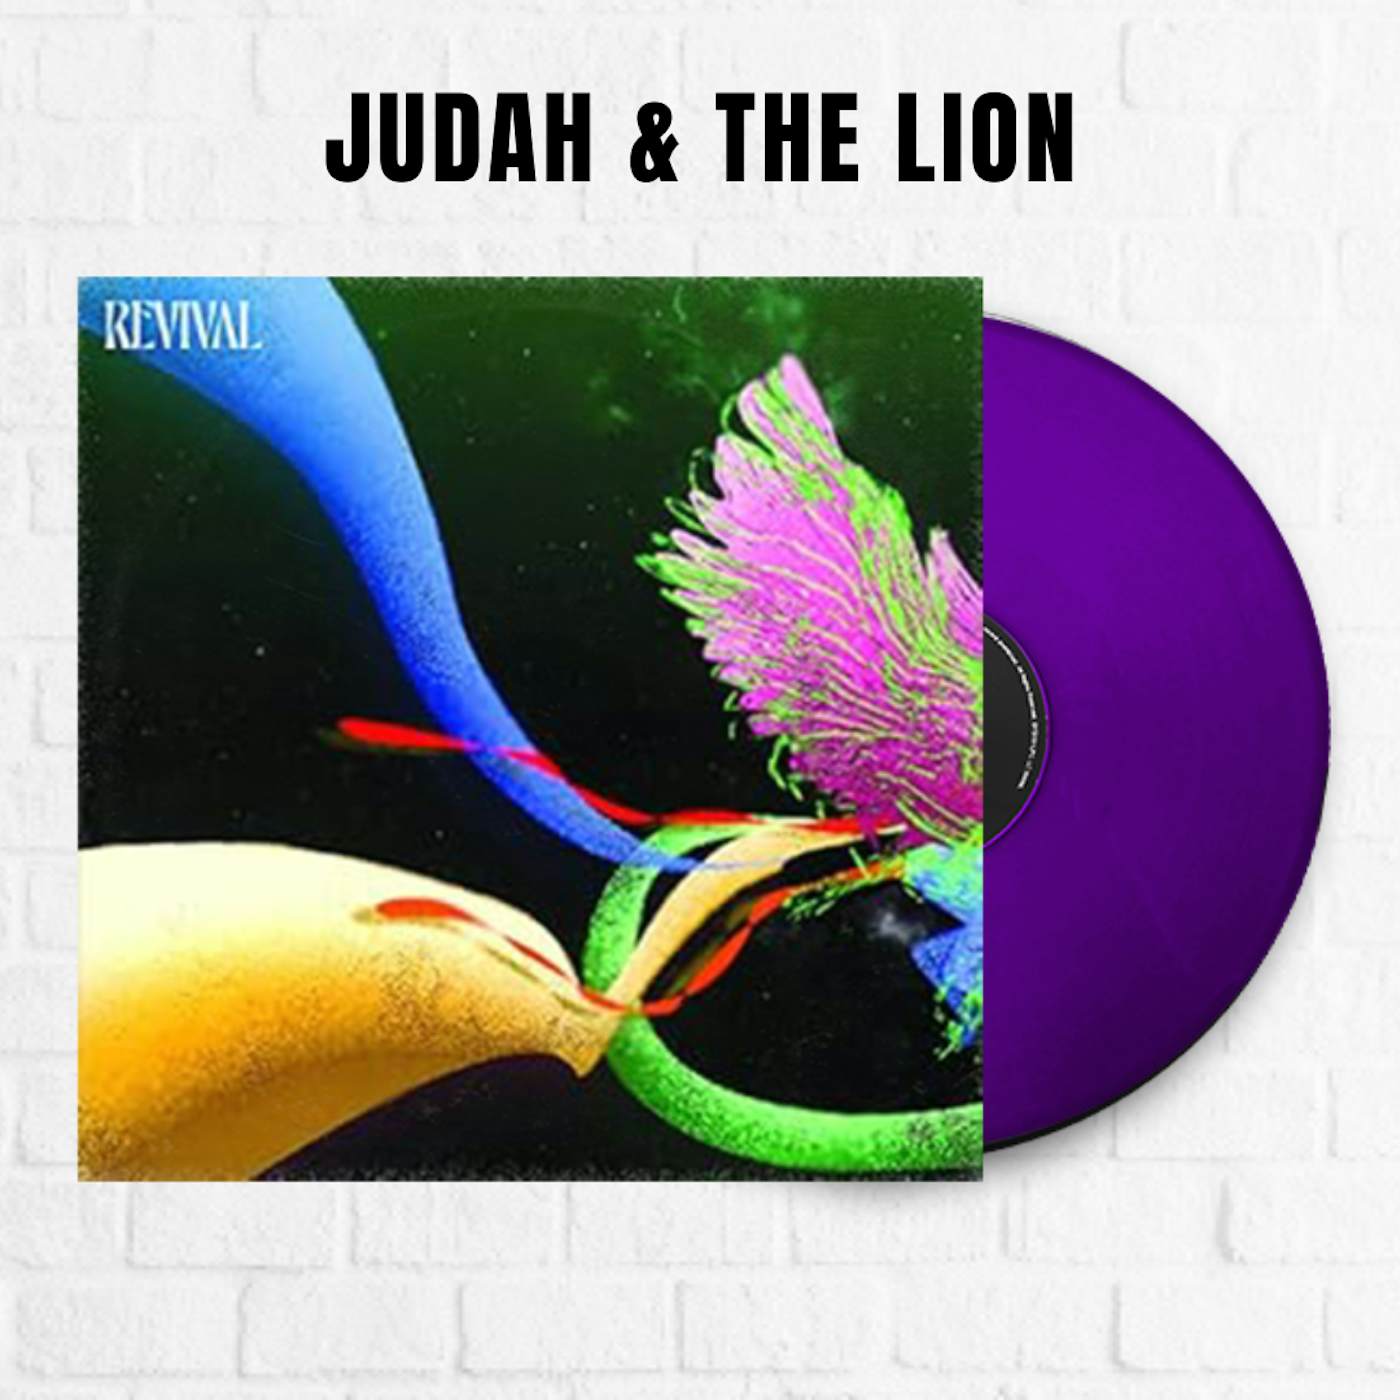 Judah & the Lion Revival [Exclusive Purple]